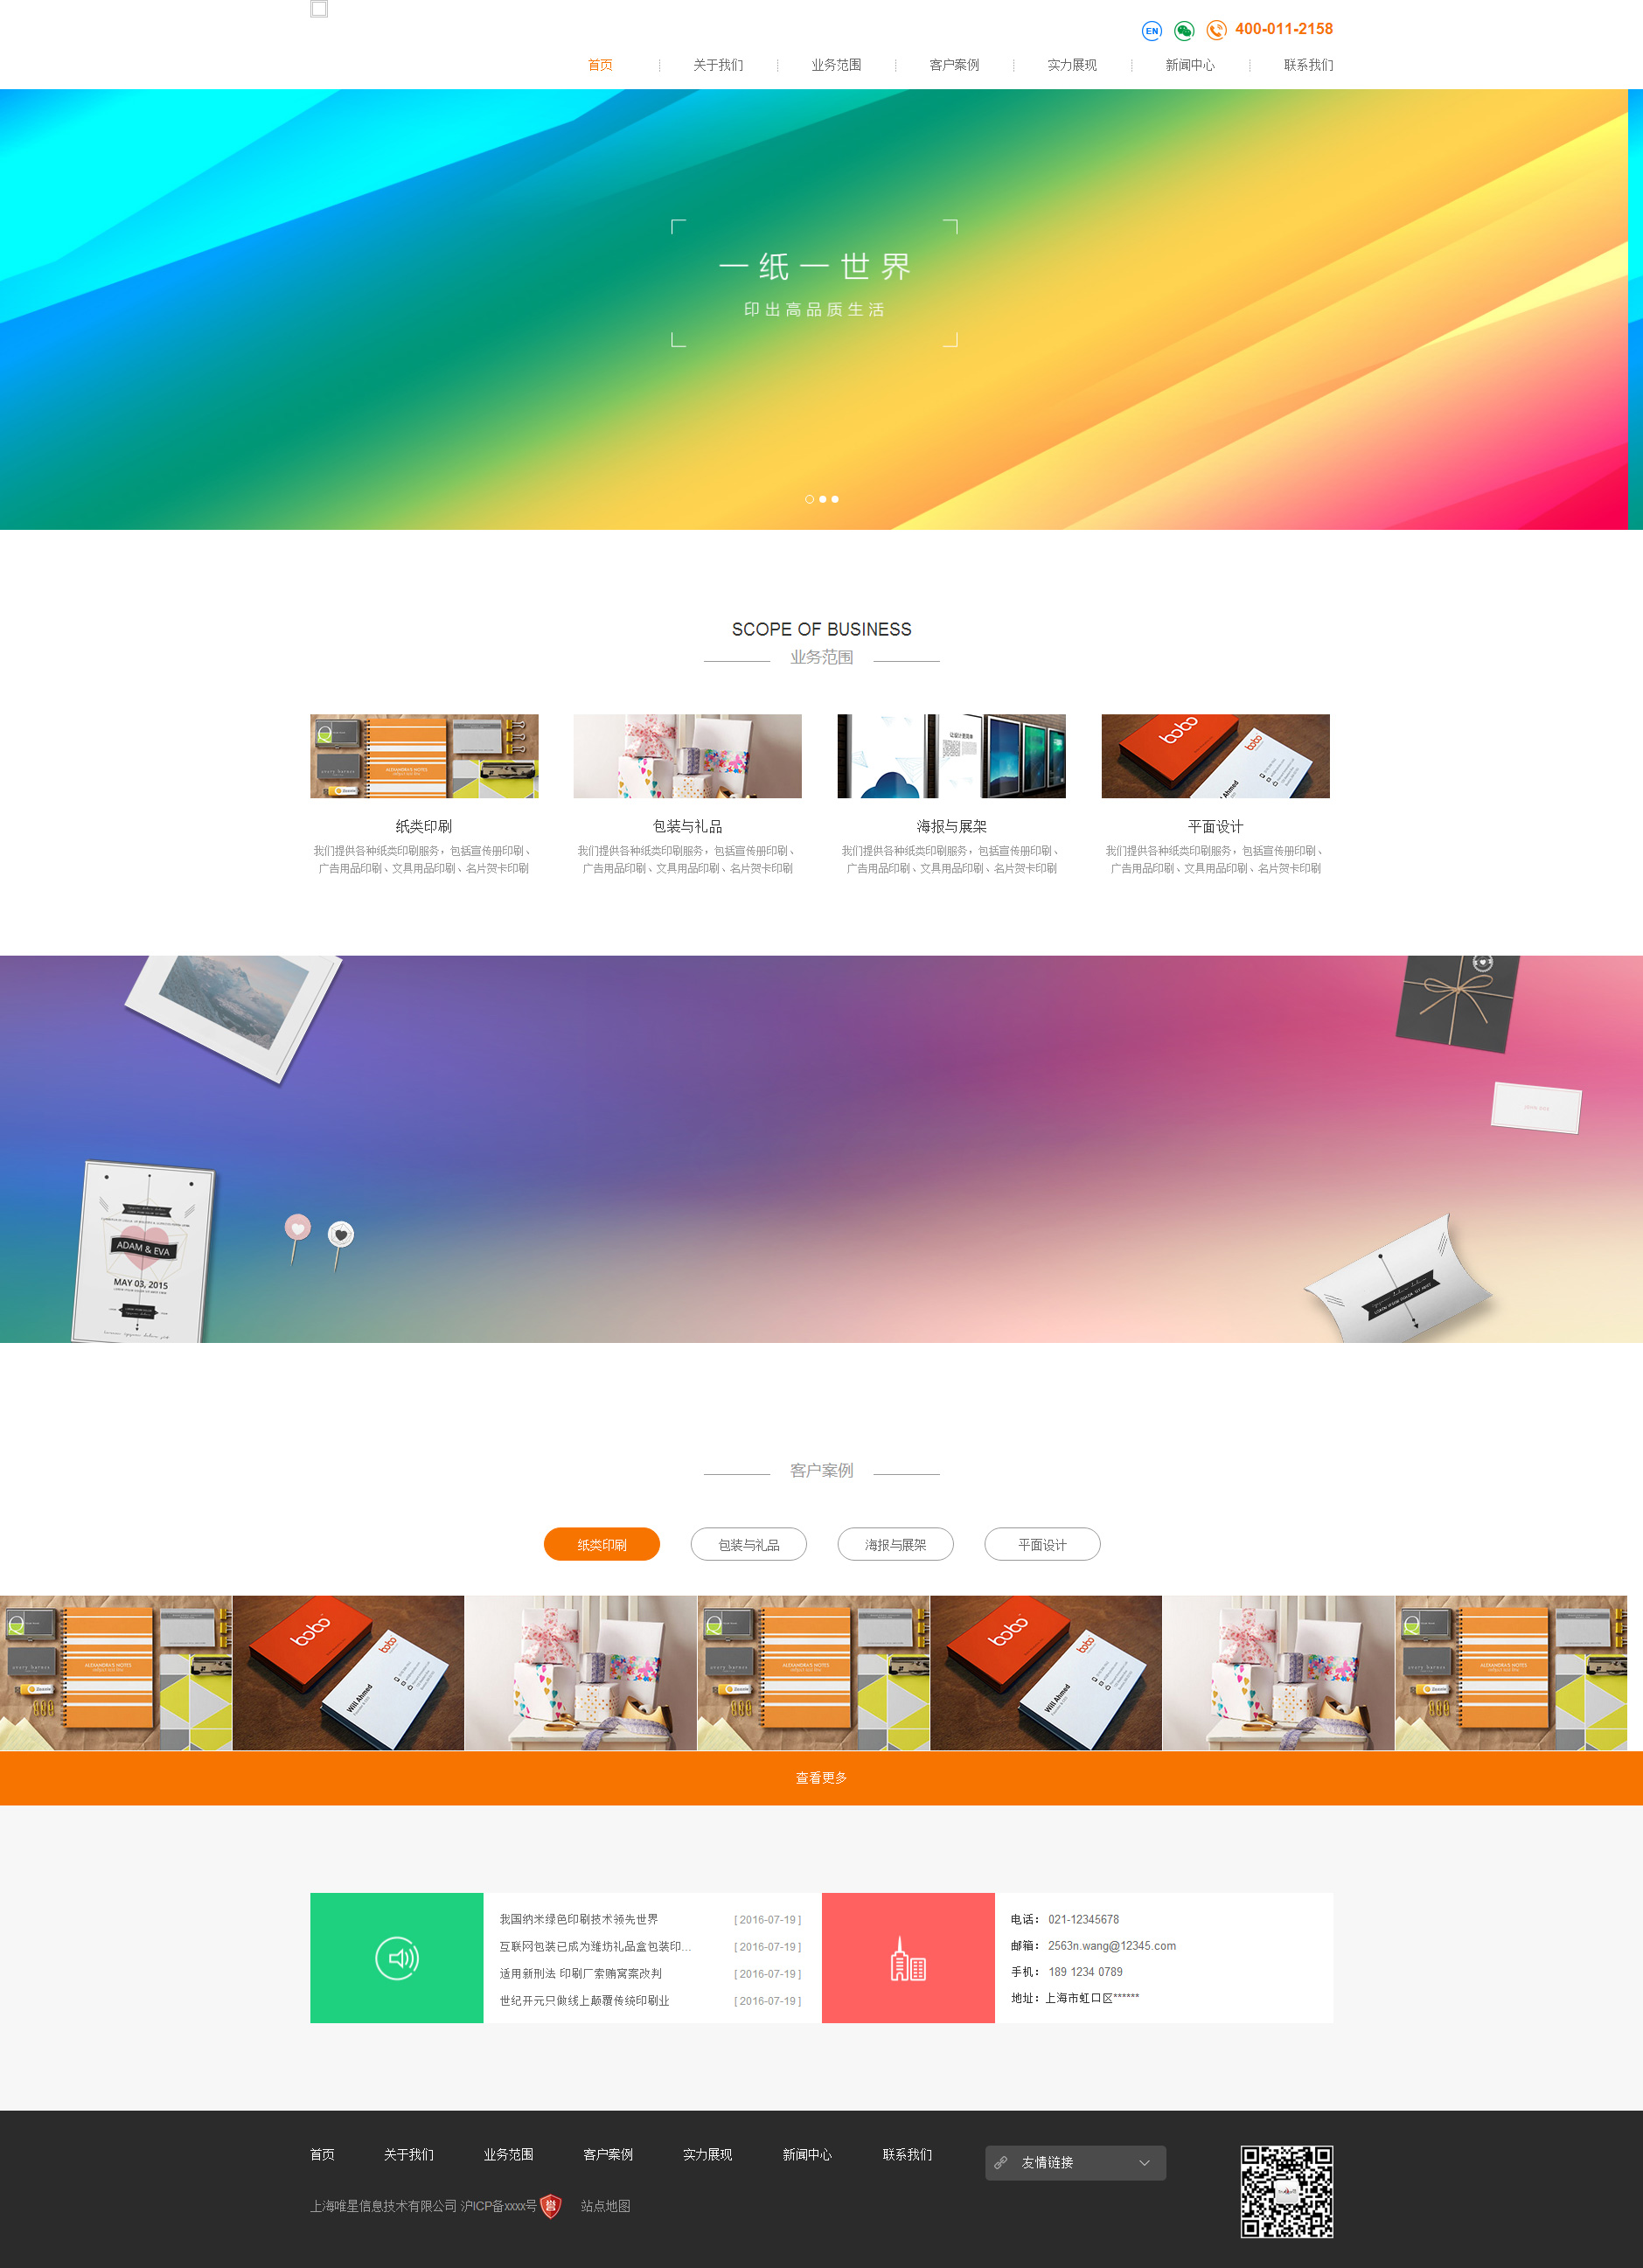 彩色主题简洁大气的印刷包装响应式网站